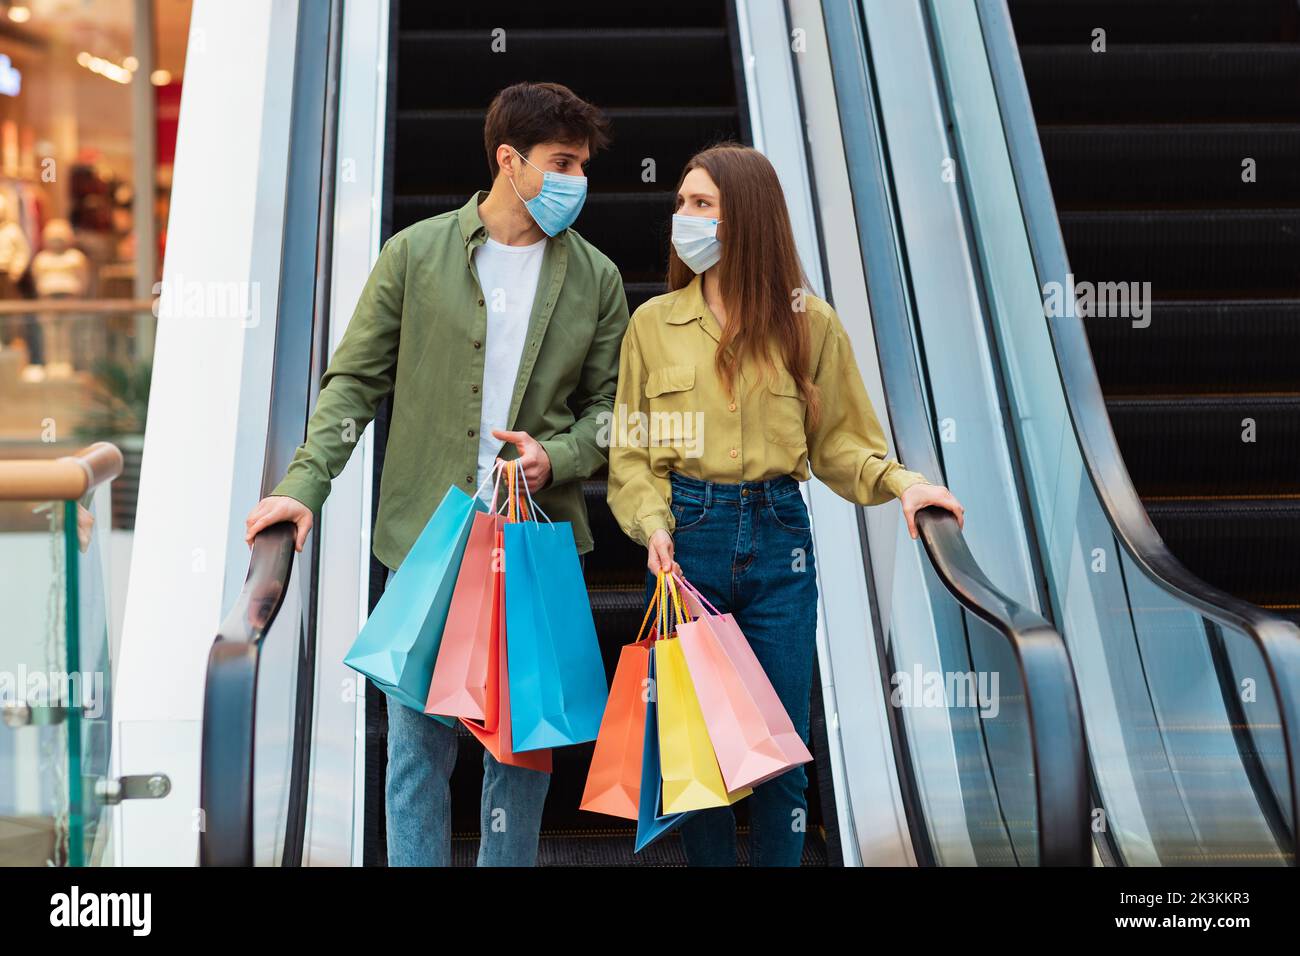 Paar Shopping Holding Bags Stehen Auf Beweglichen Treppen In Der Mall Stockfoto